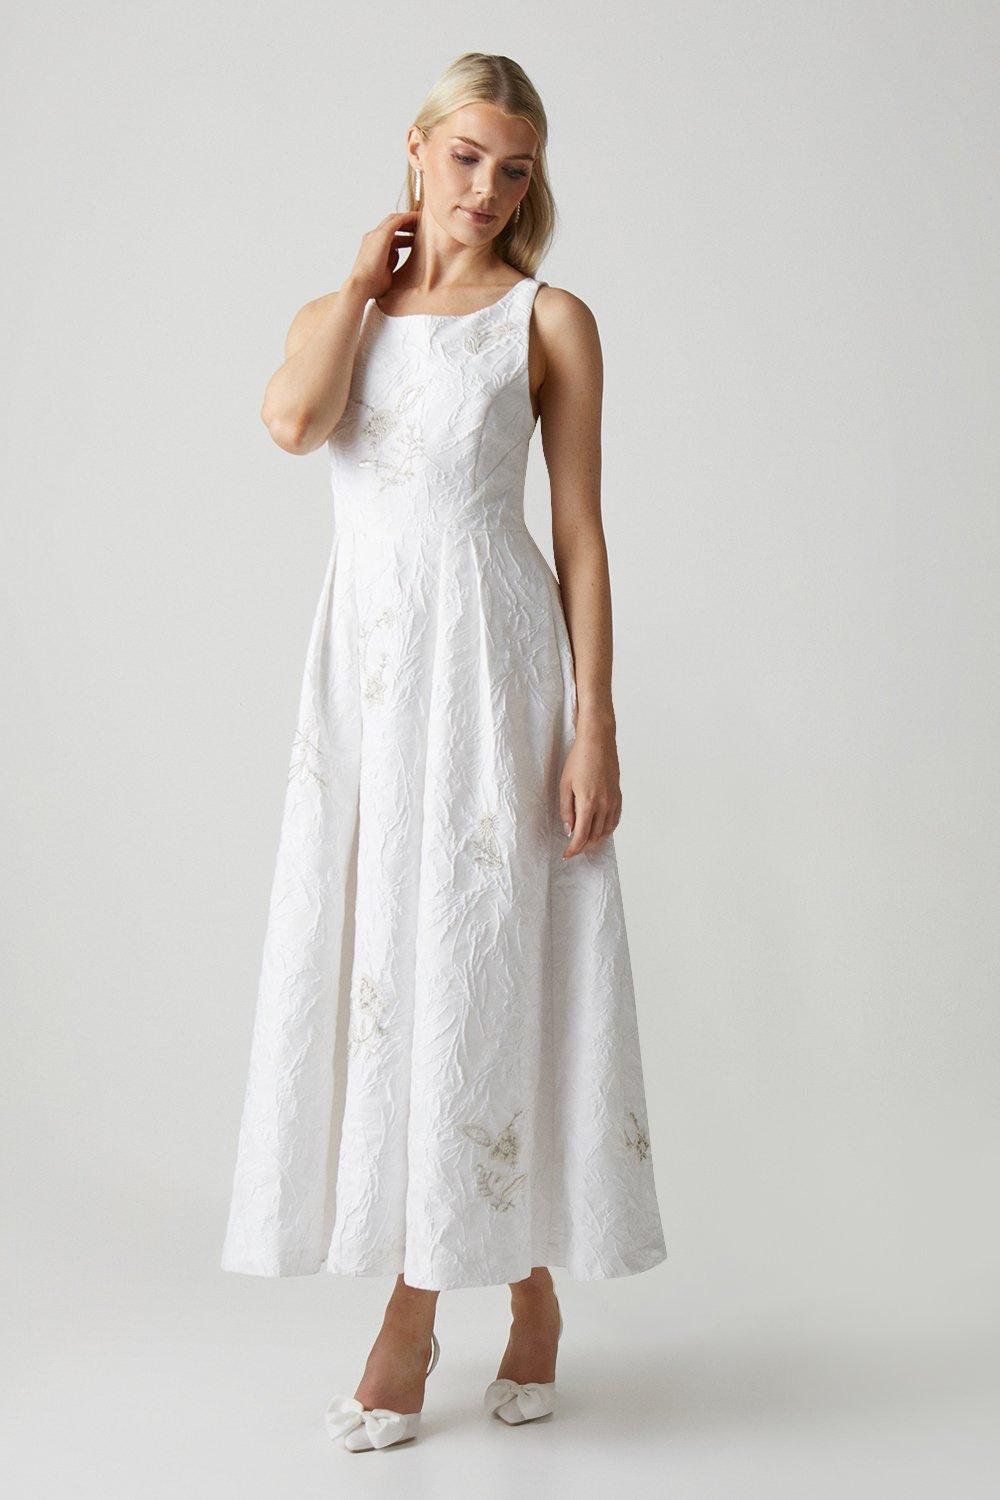 Premium Embellished Jacquard Cross Back Wedding Dress - Ivory